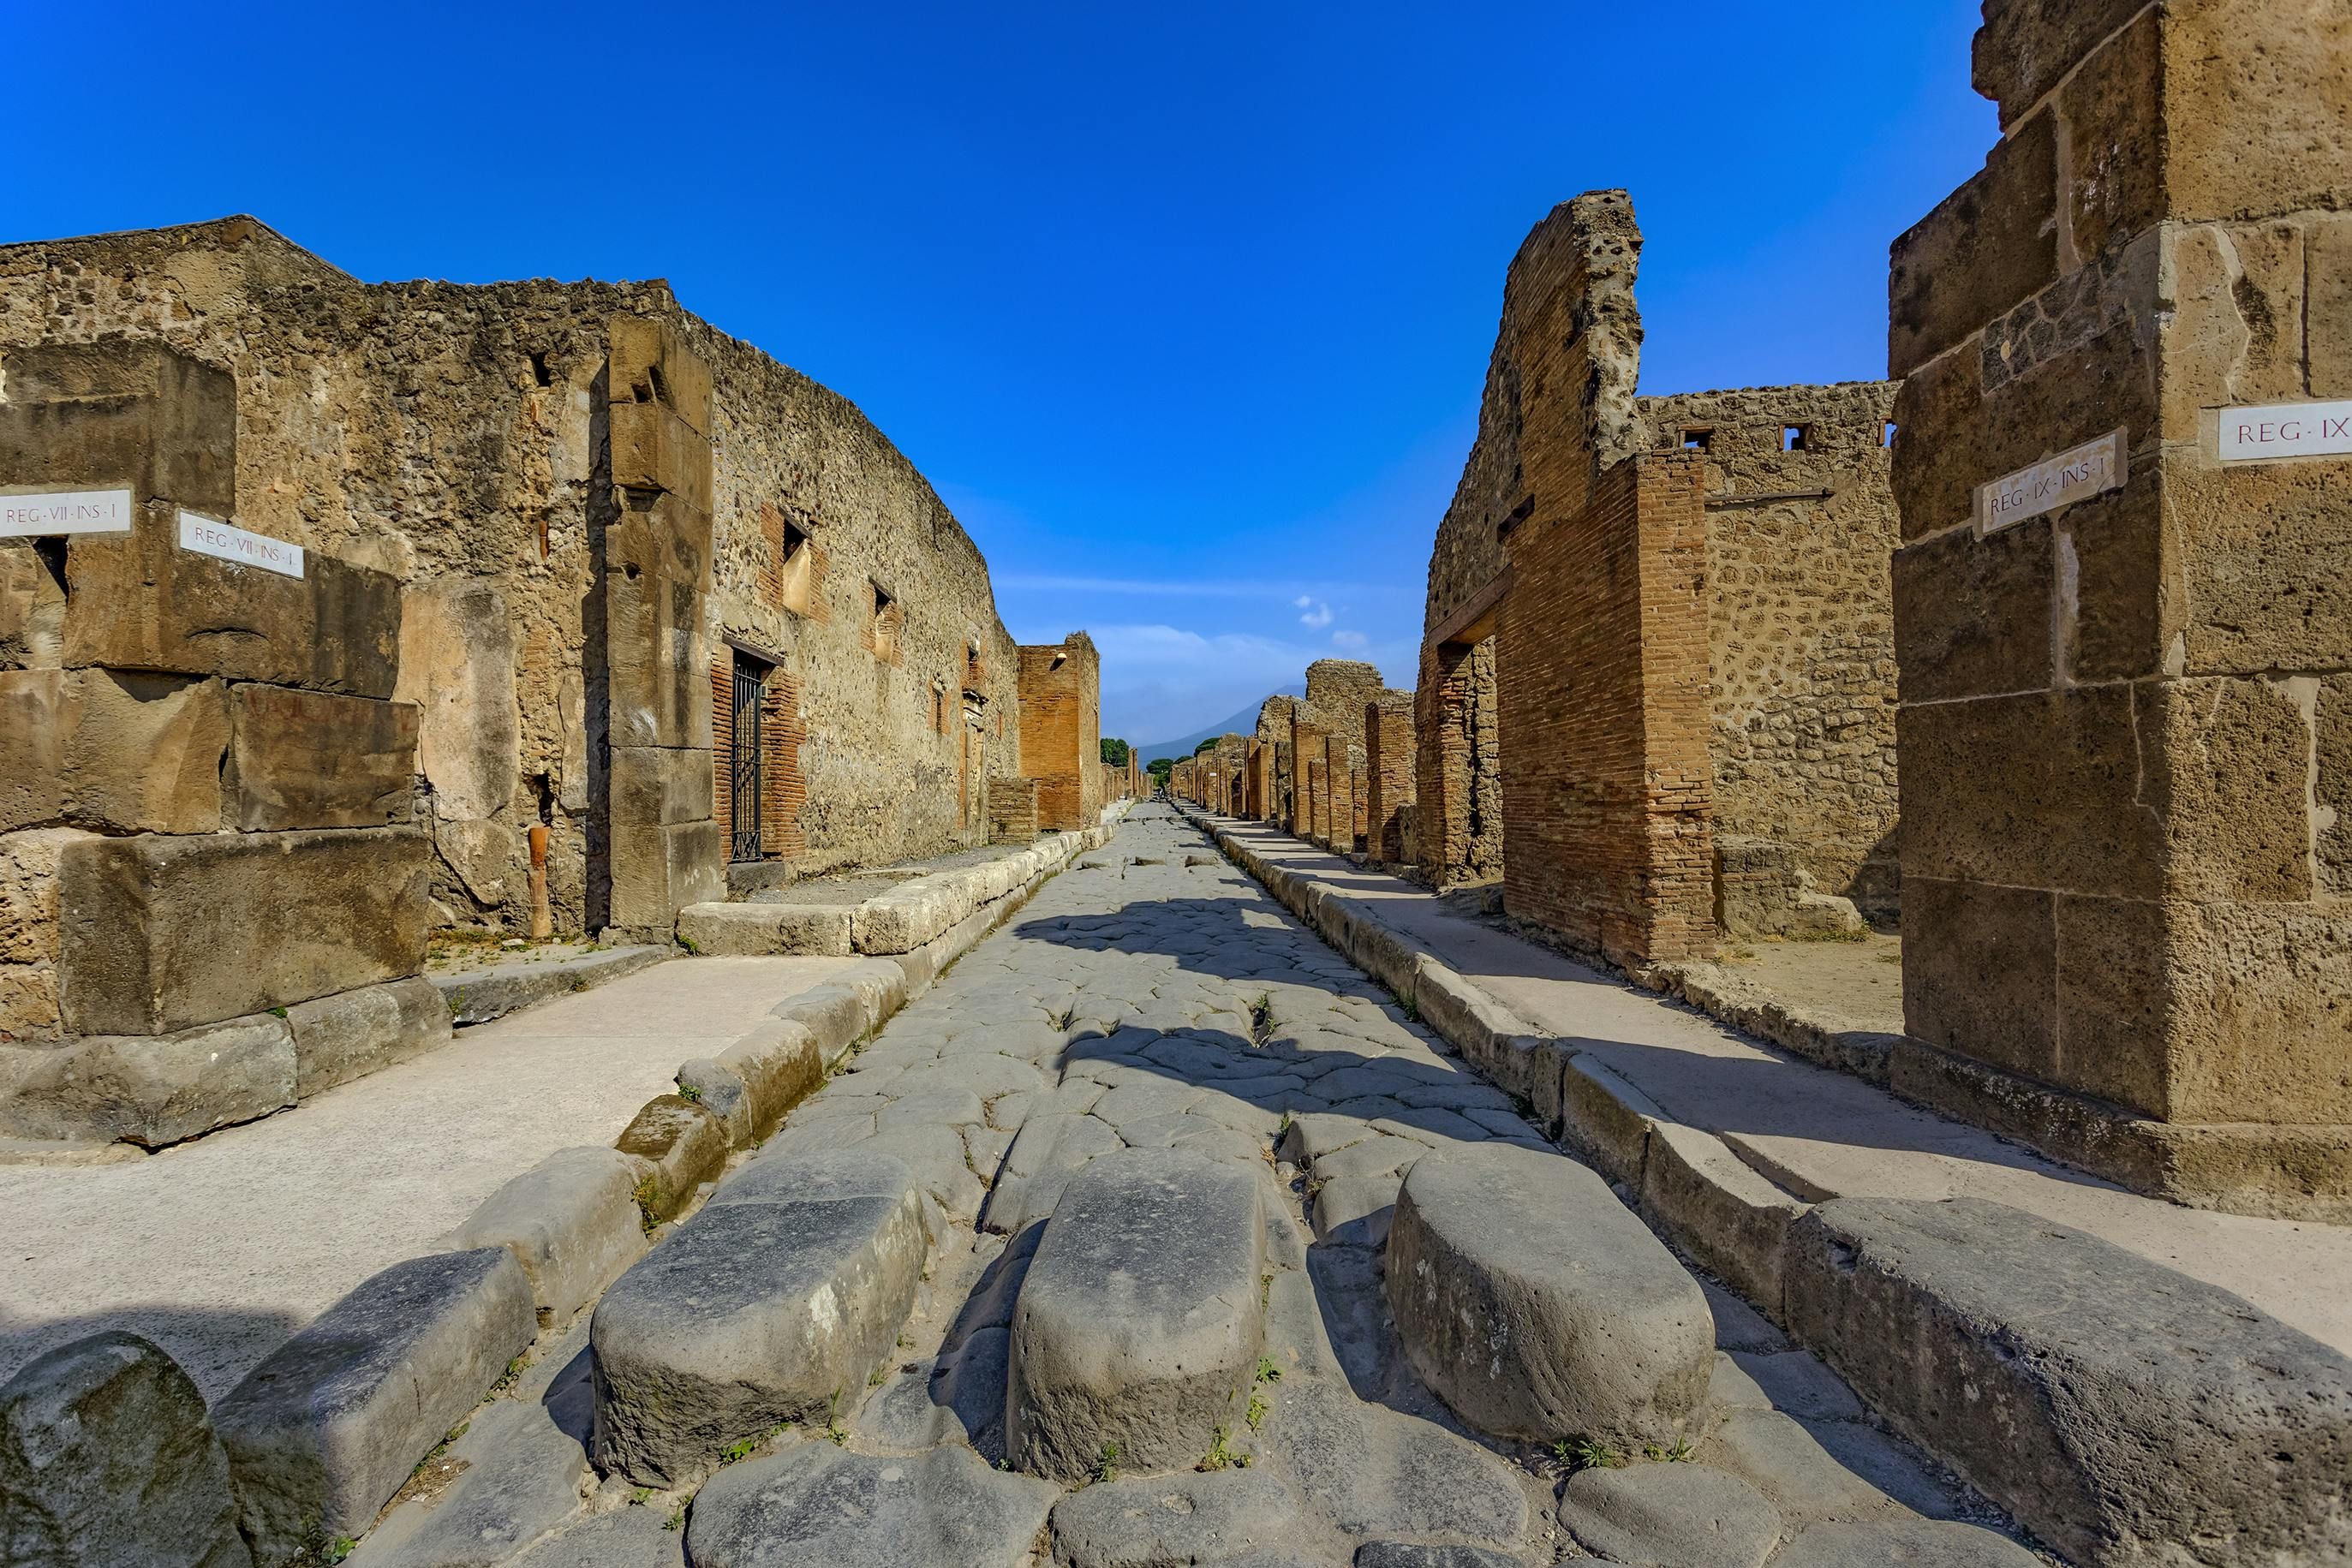 Imagen del tour: Entradas para las ruinas de Pompeya